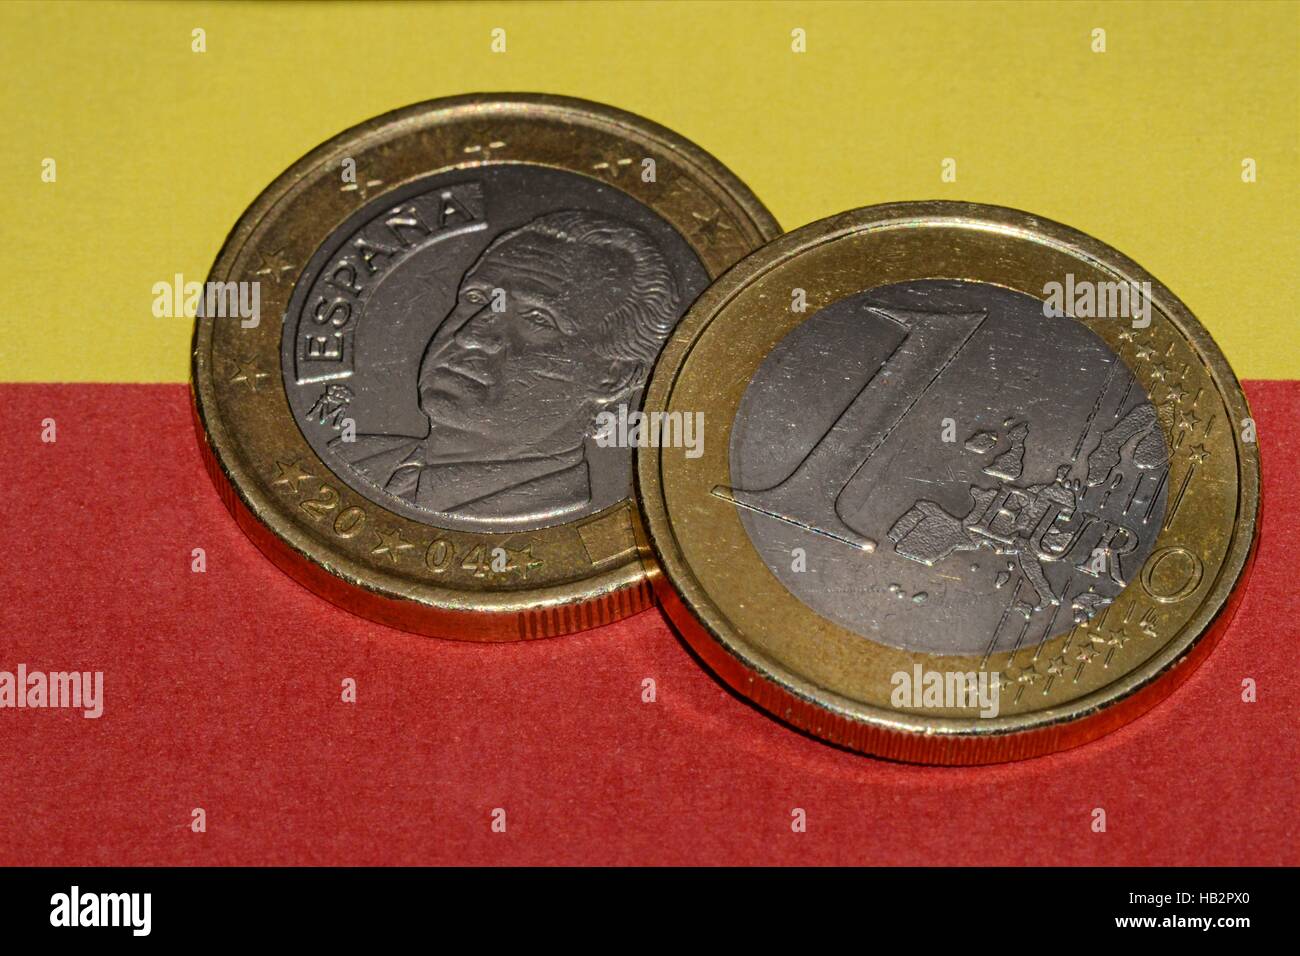 Spanisch monedas de euro Foto de stock